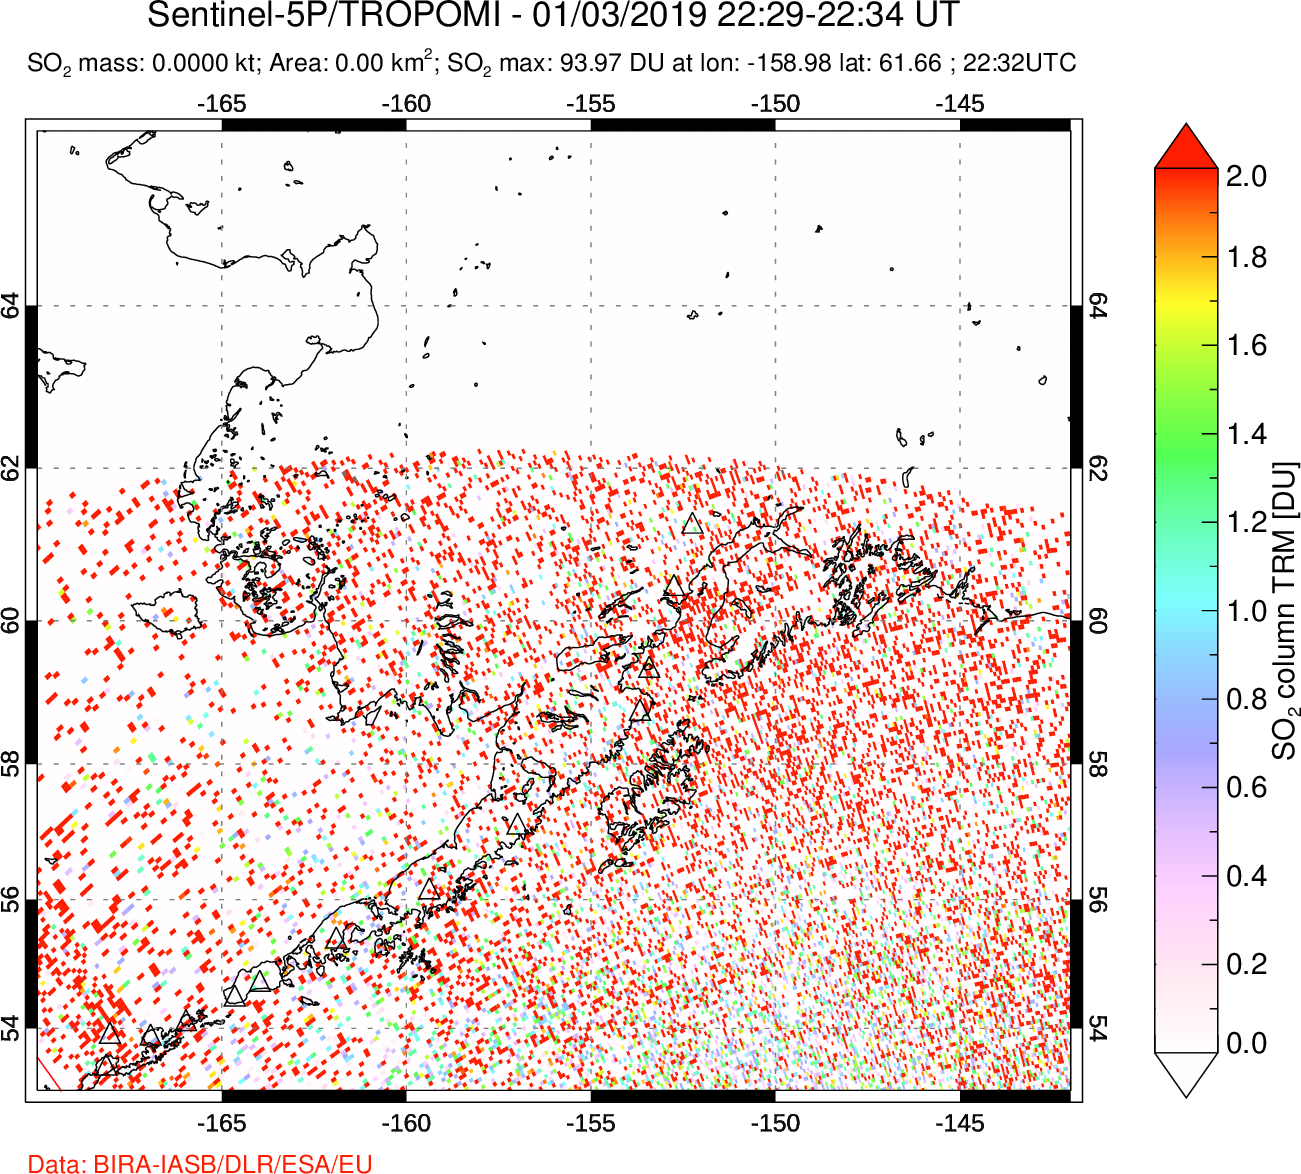 A sulfur dioxide image over Alaska, USA on Jan 03, 2019.